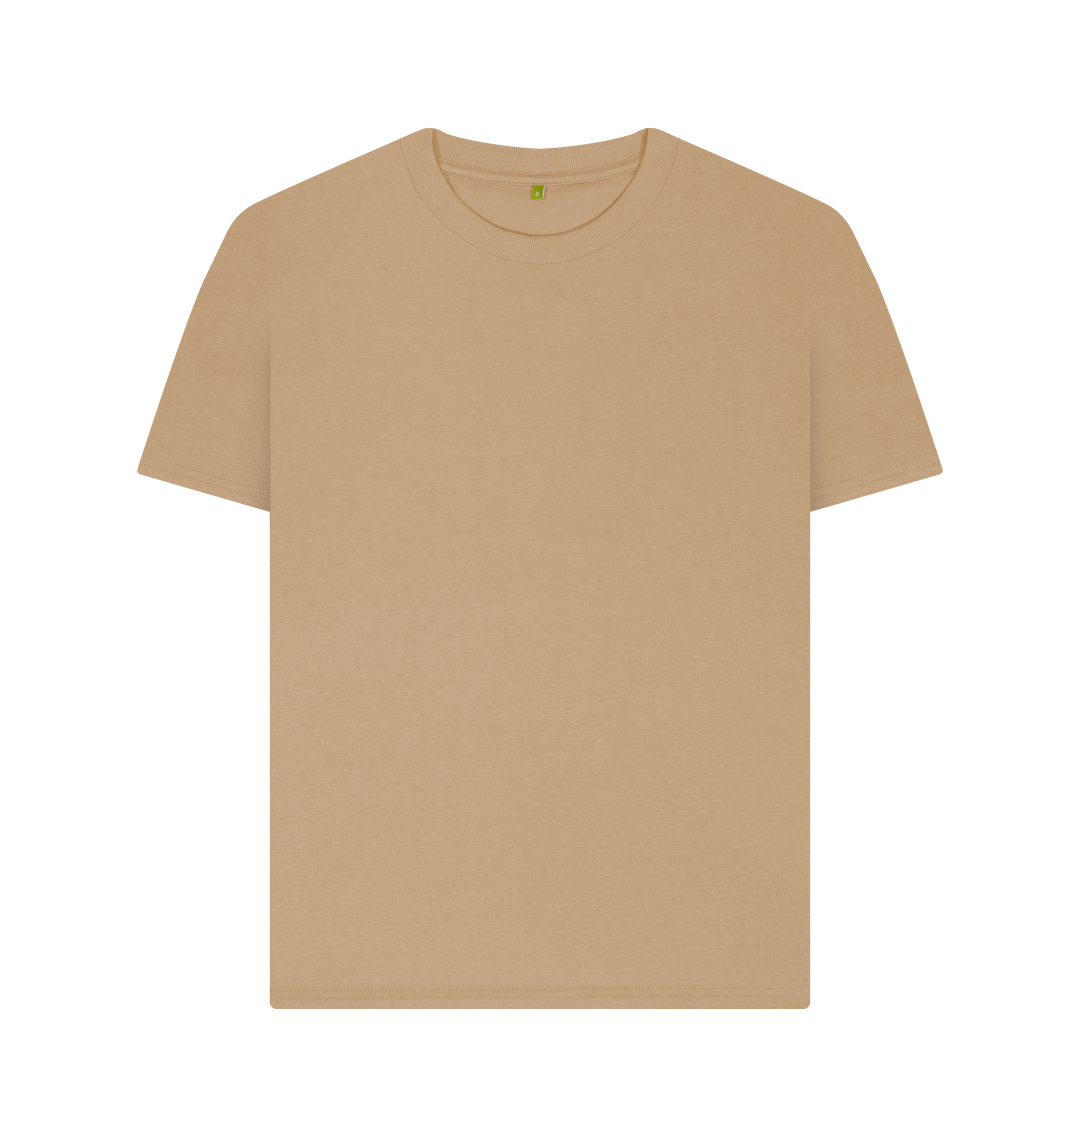 Women's Plain T-shirt